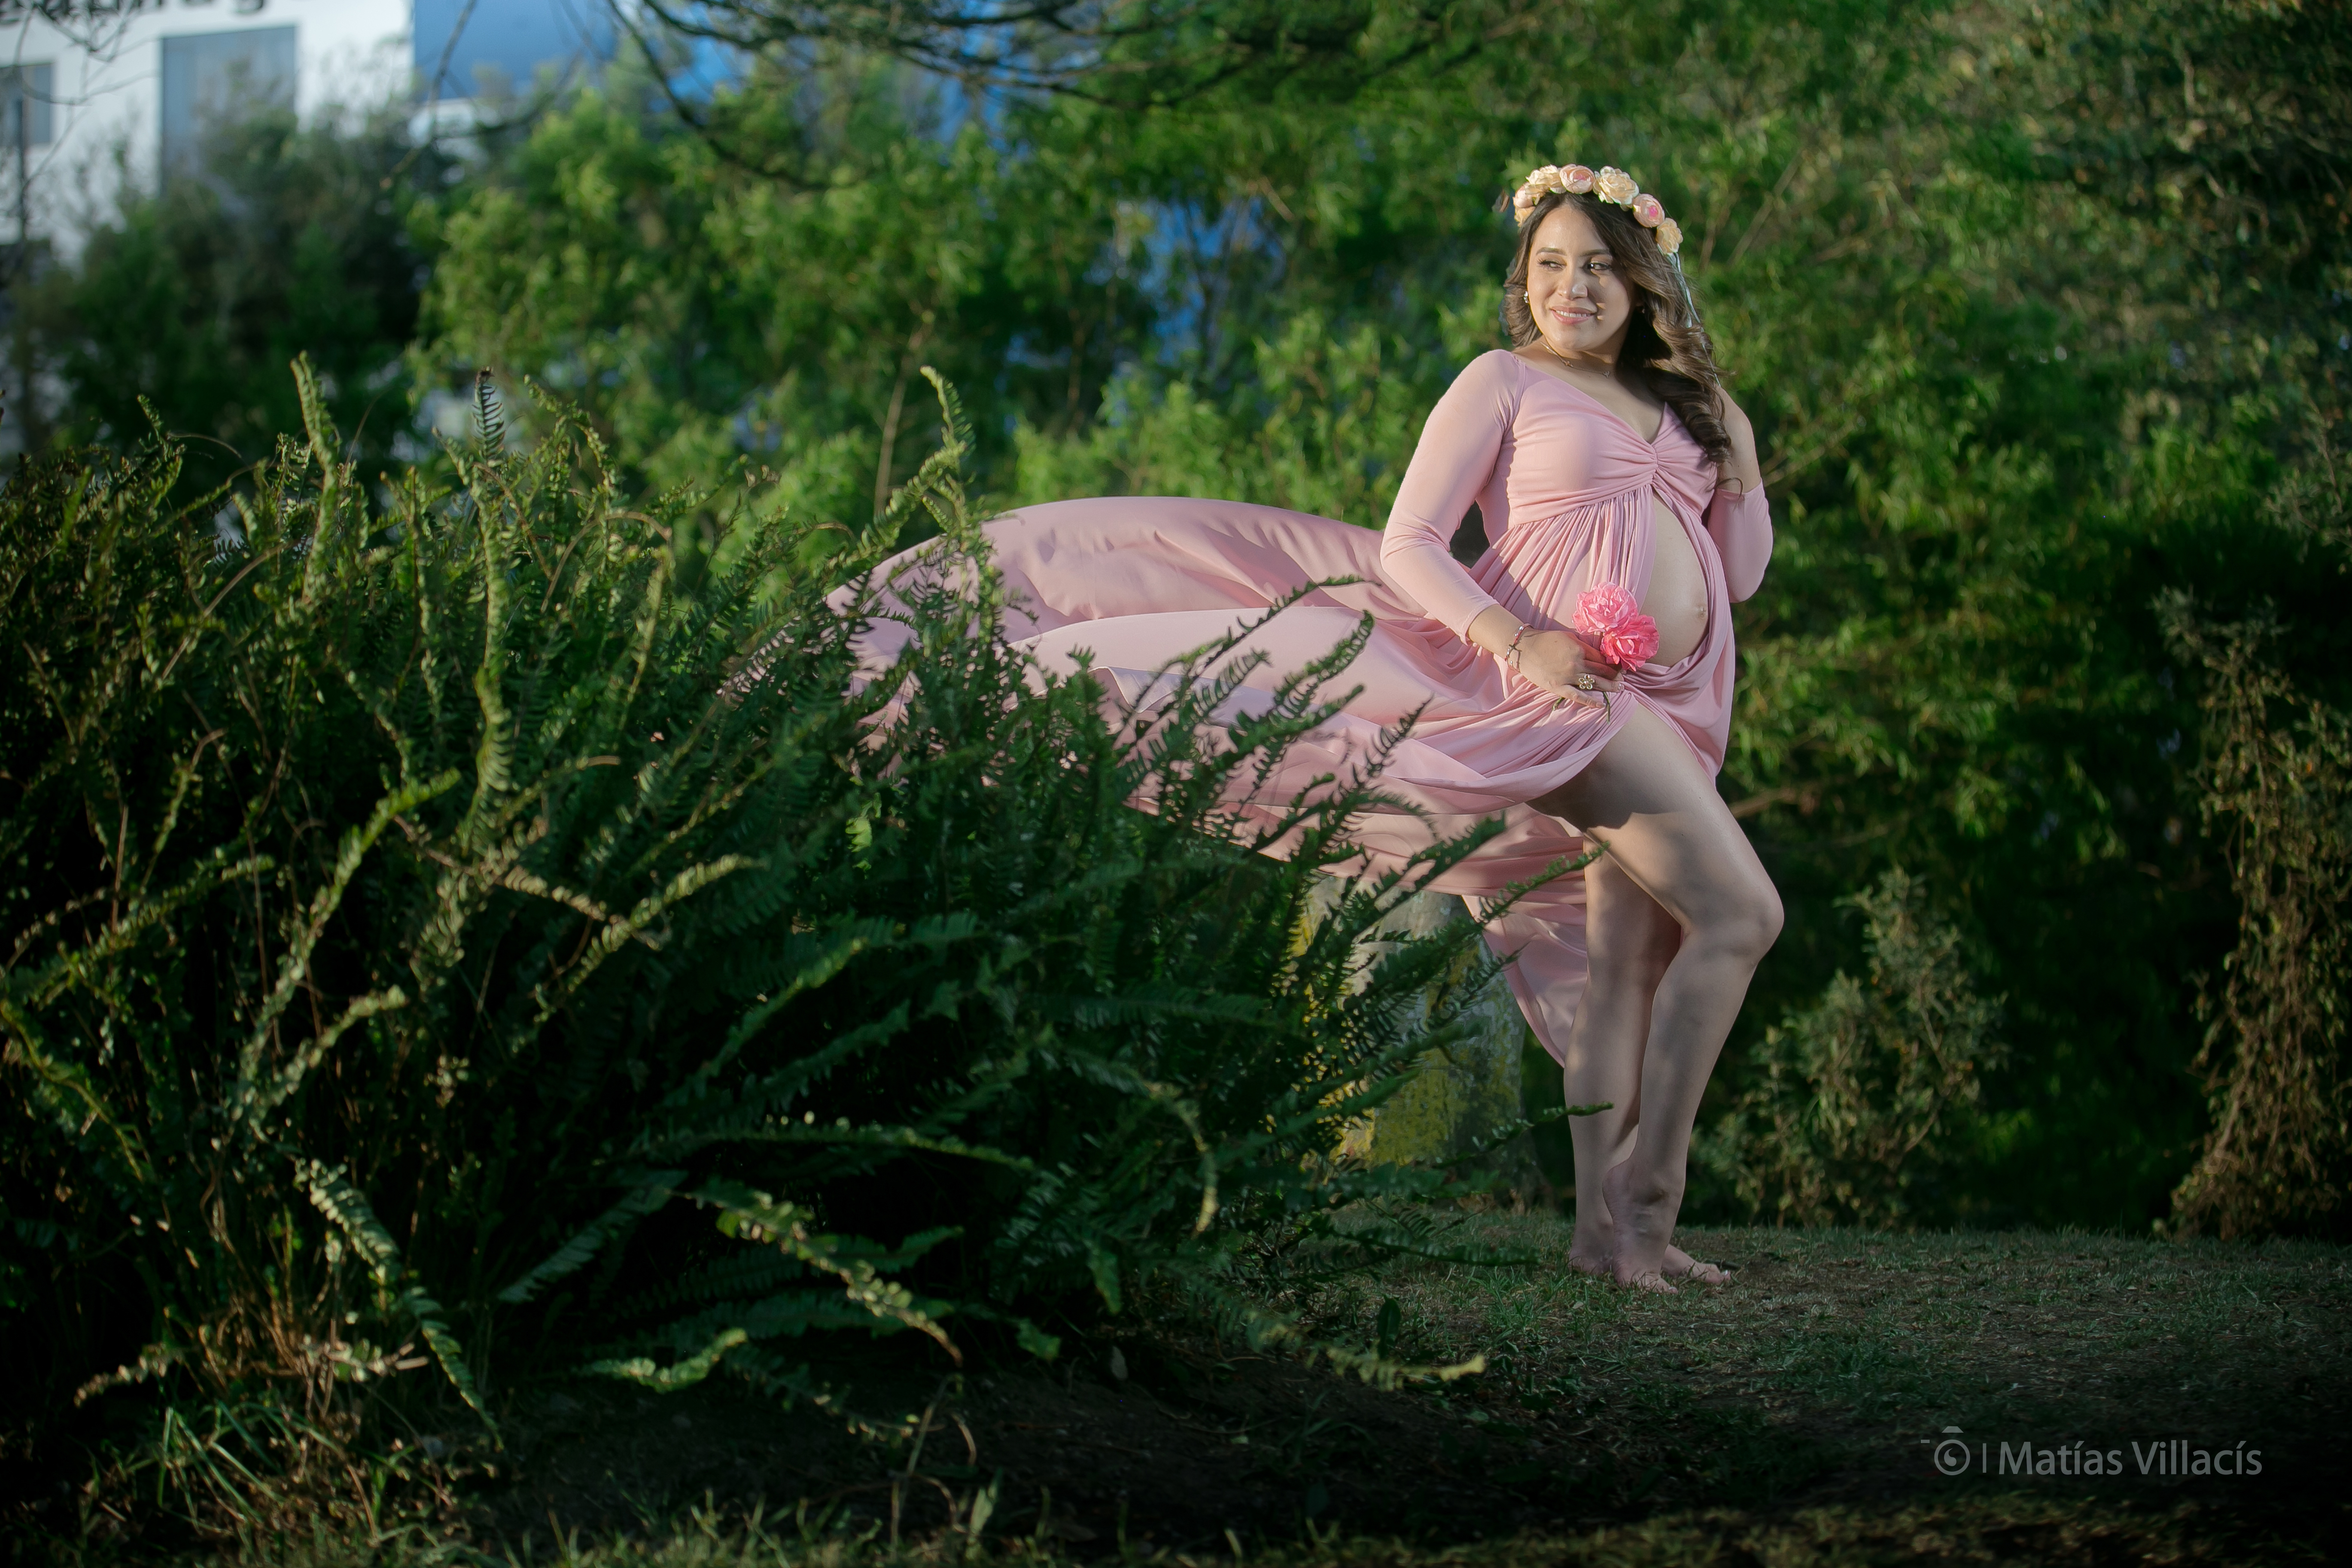 Sesión de Fotos profesionales embarazada cuenca ecuador